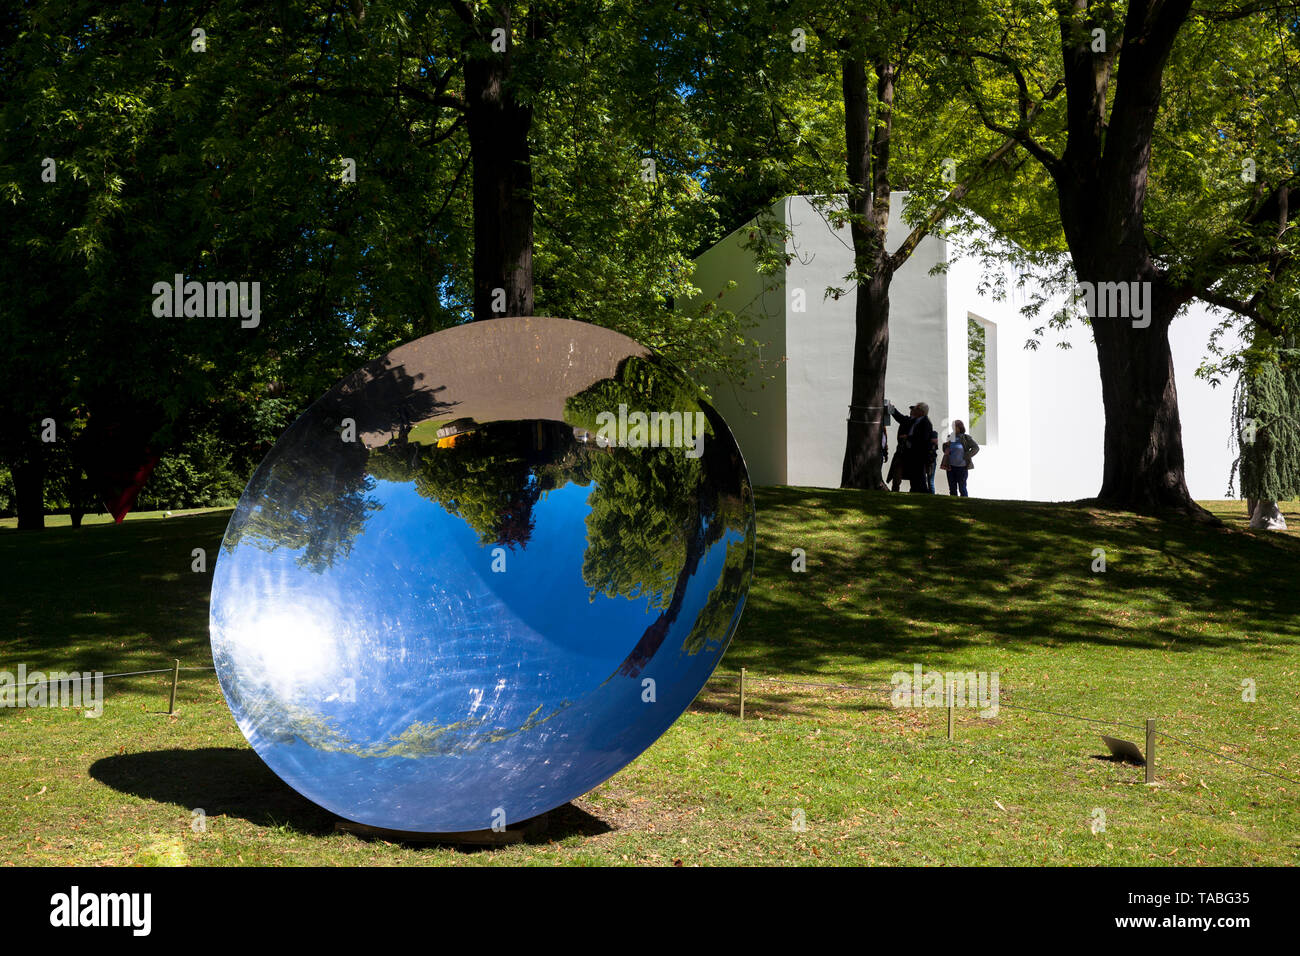 Il Parco della scultura (Skulpturenpark), scultura untiteled da Anish Kapoor, 1997, Colonia, Germania. der Skulpturenpark, Skulptur ohne Titel von Anish Foto Stock